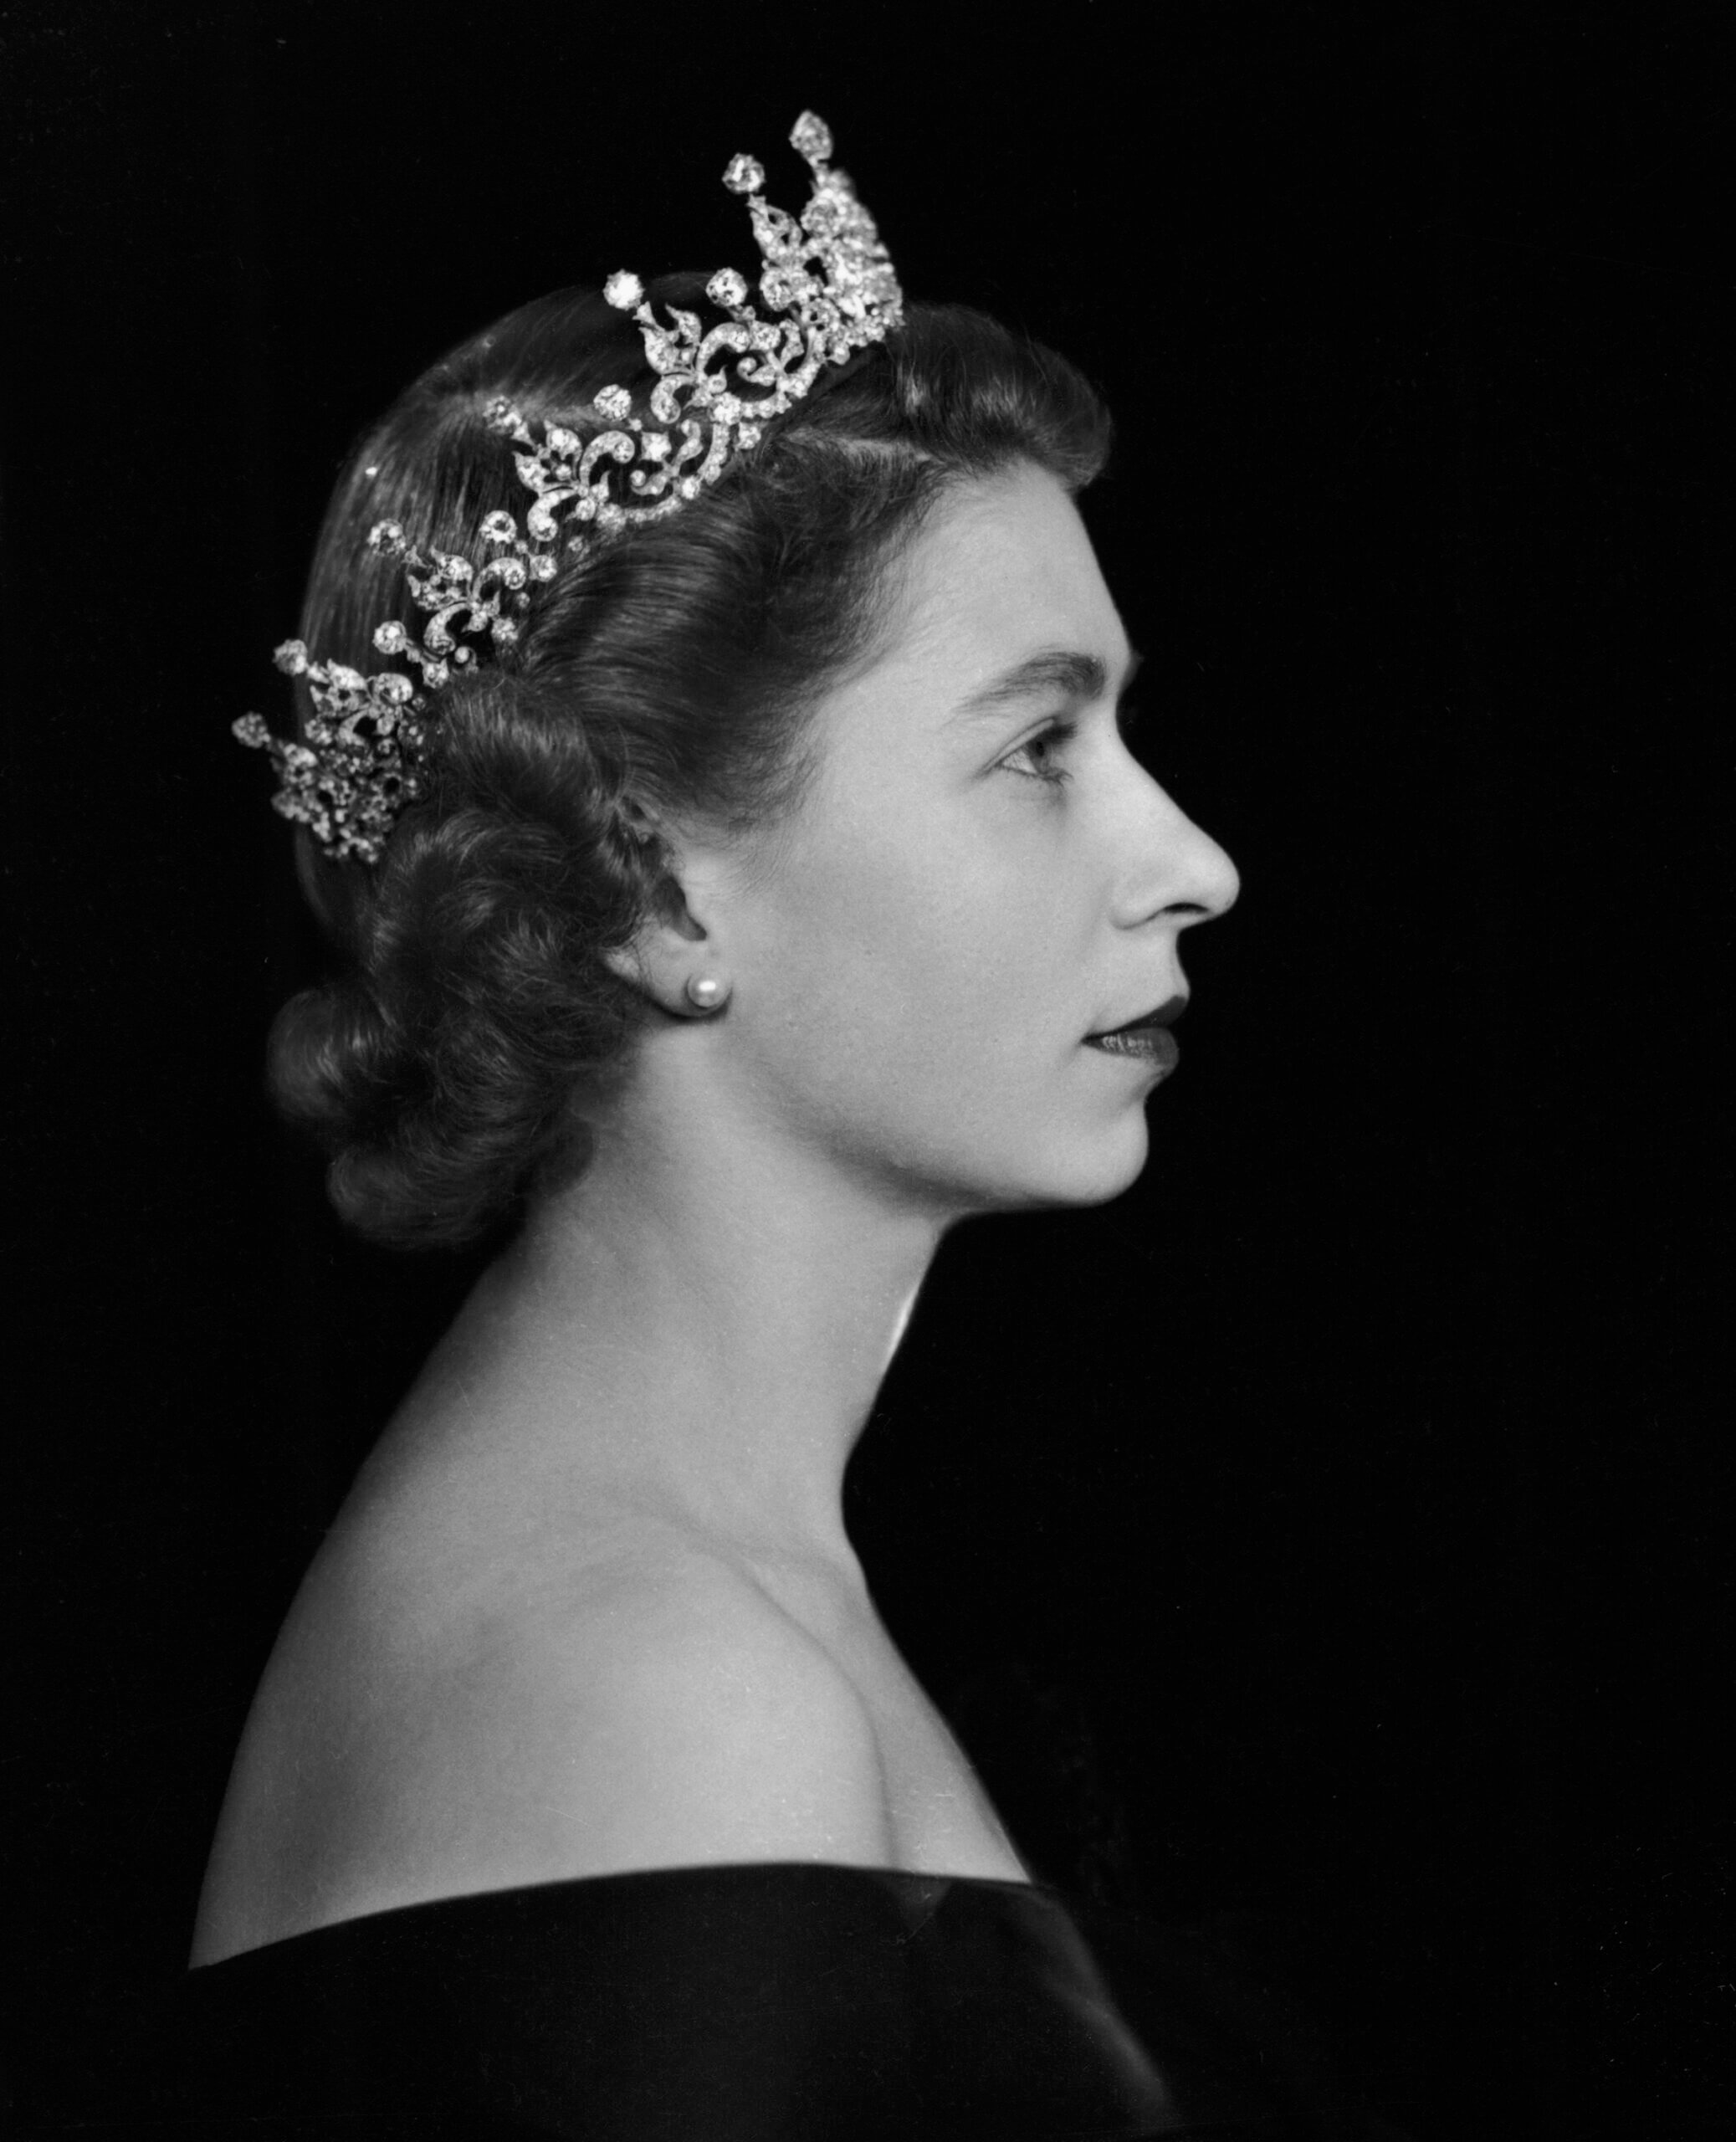 Portrait of The Queen